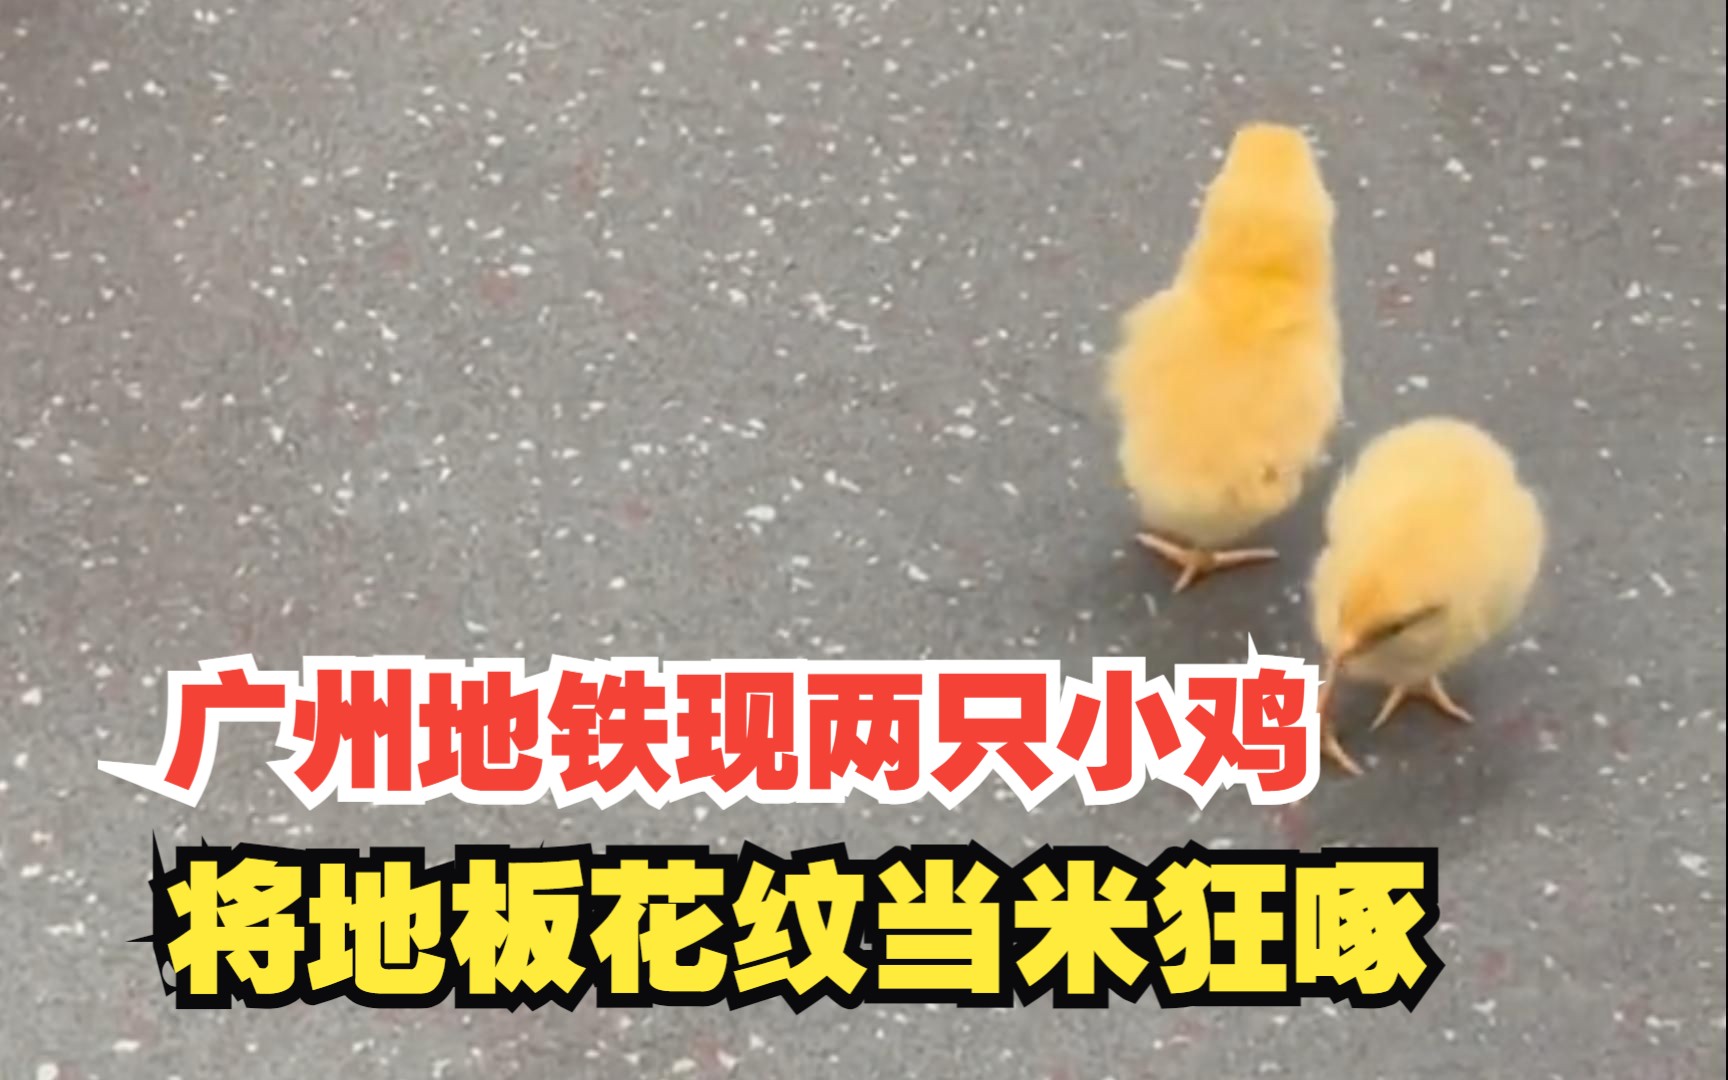 广州地铁两只小鸡将地板花纹当米啄